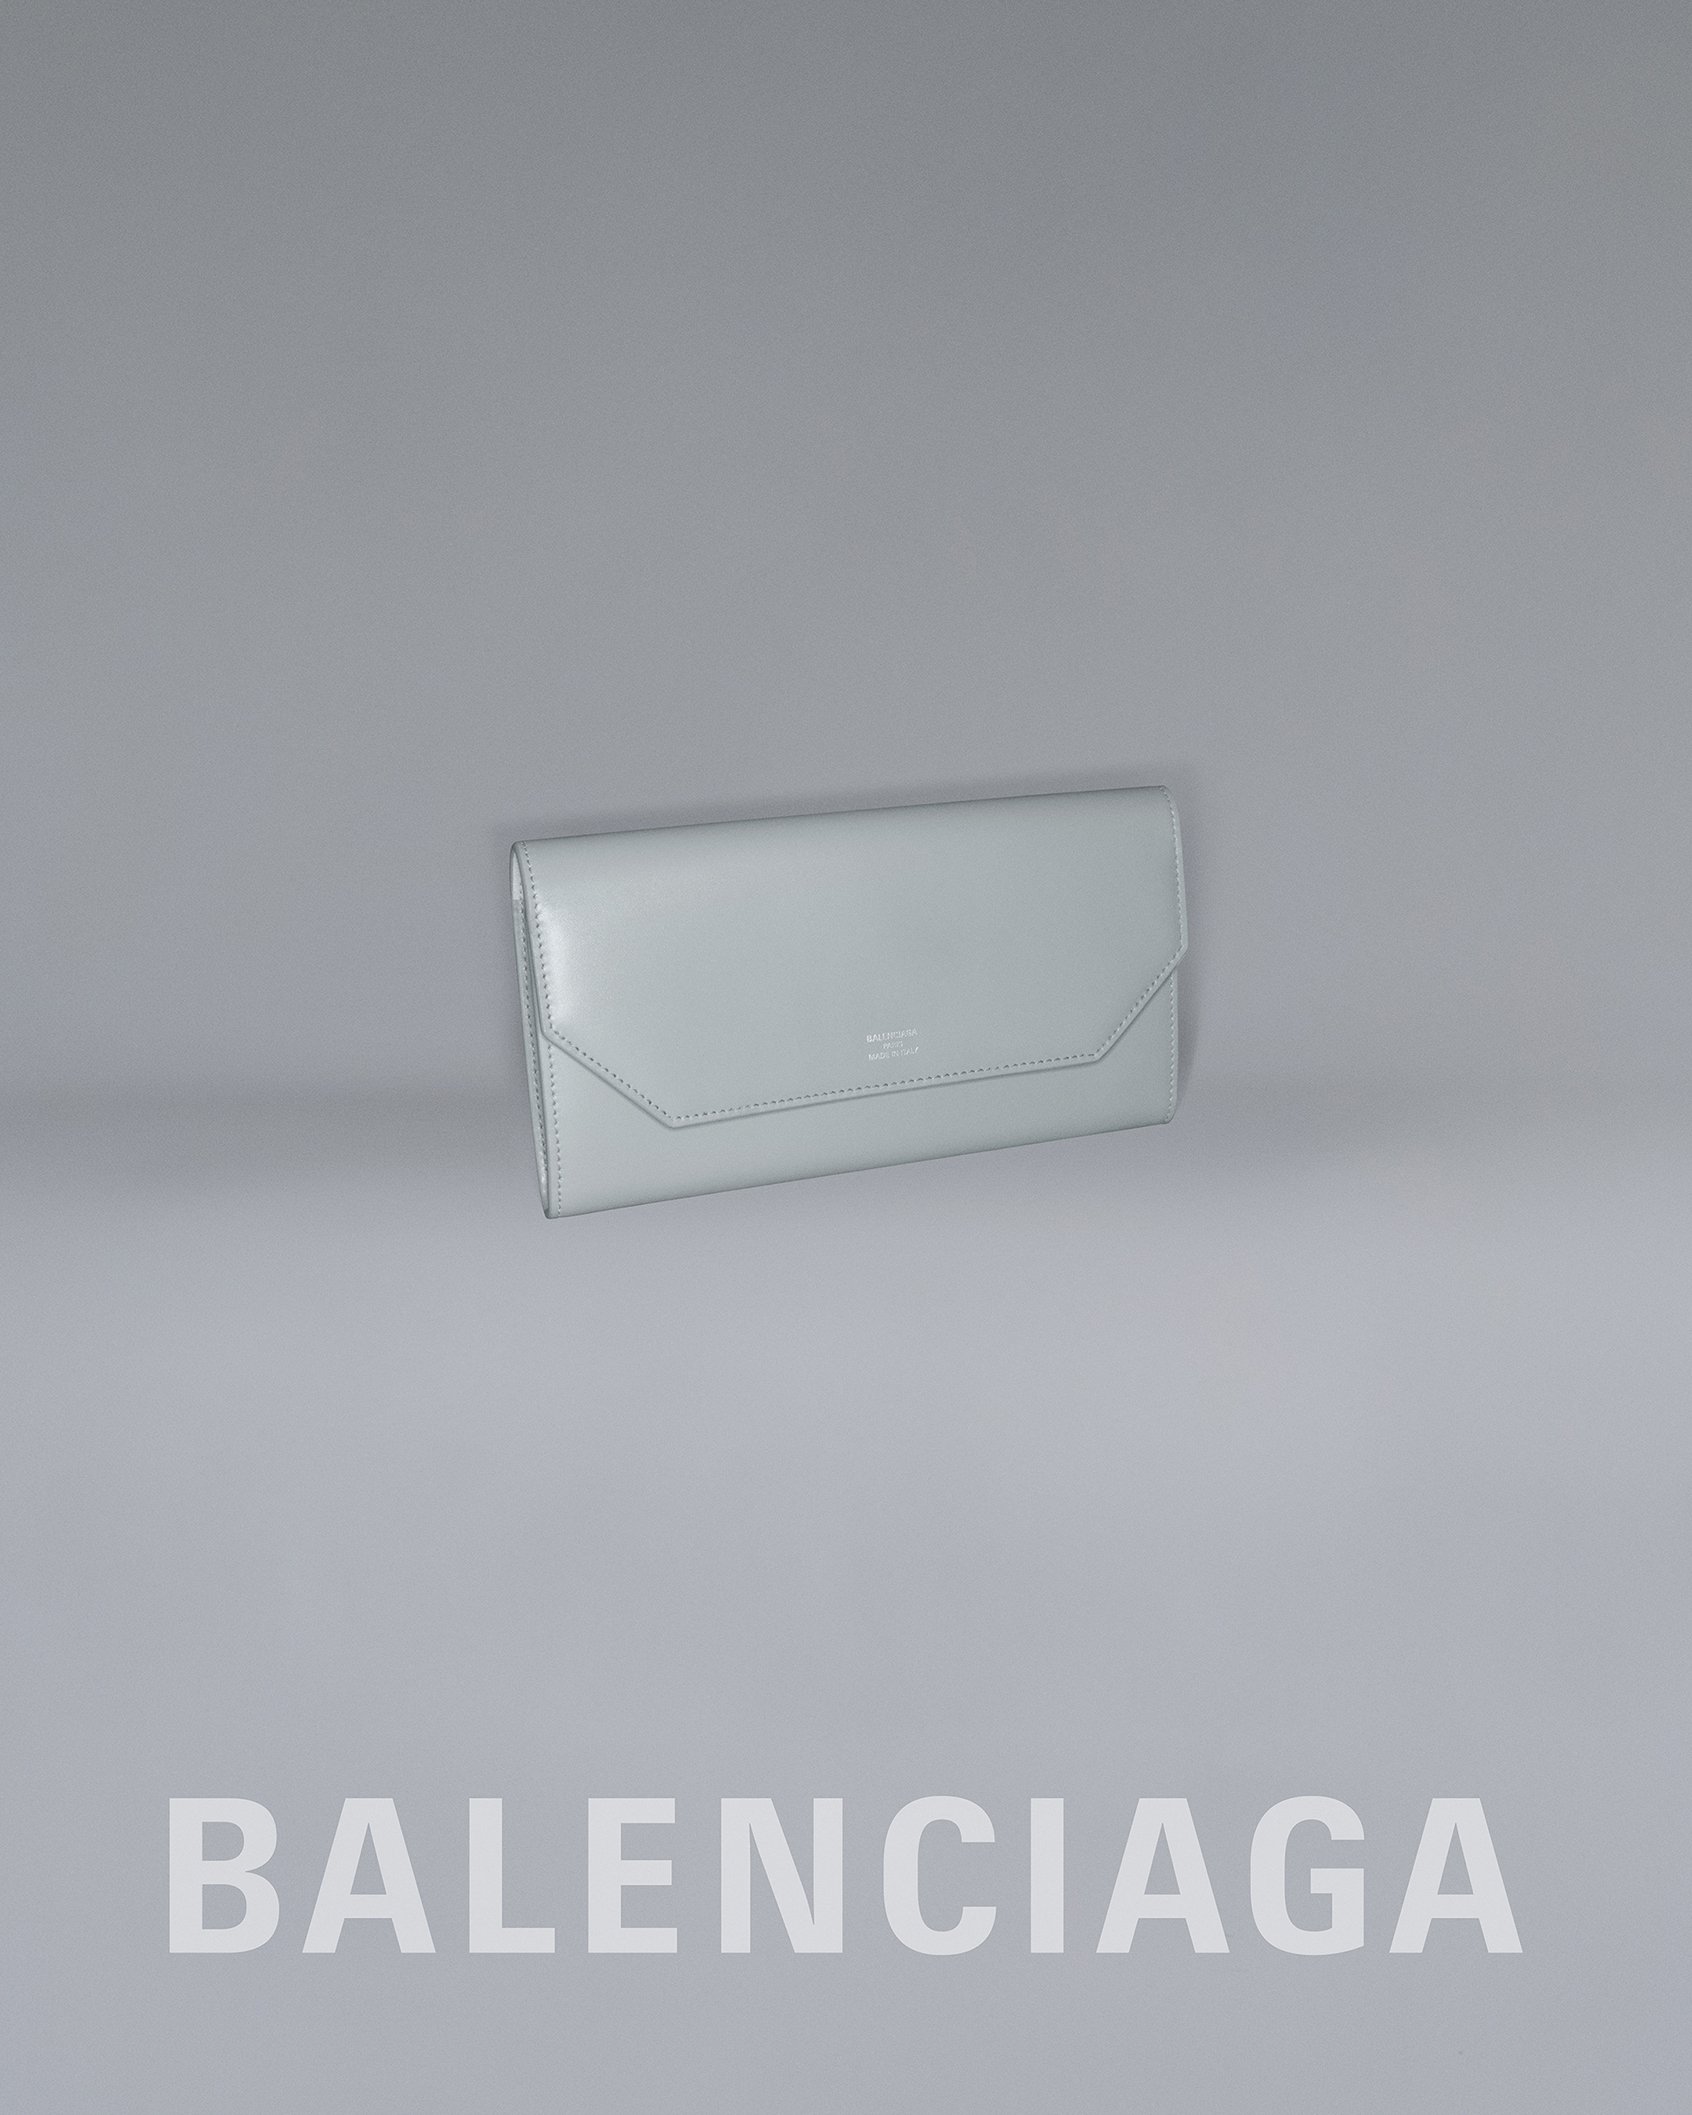 BALENCIAGA GARDE-ROBE 23 STILL LIFE IMAGE LOGO ENVELOPE 1.jpg